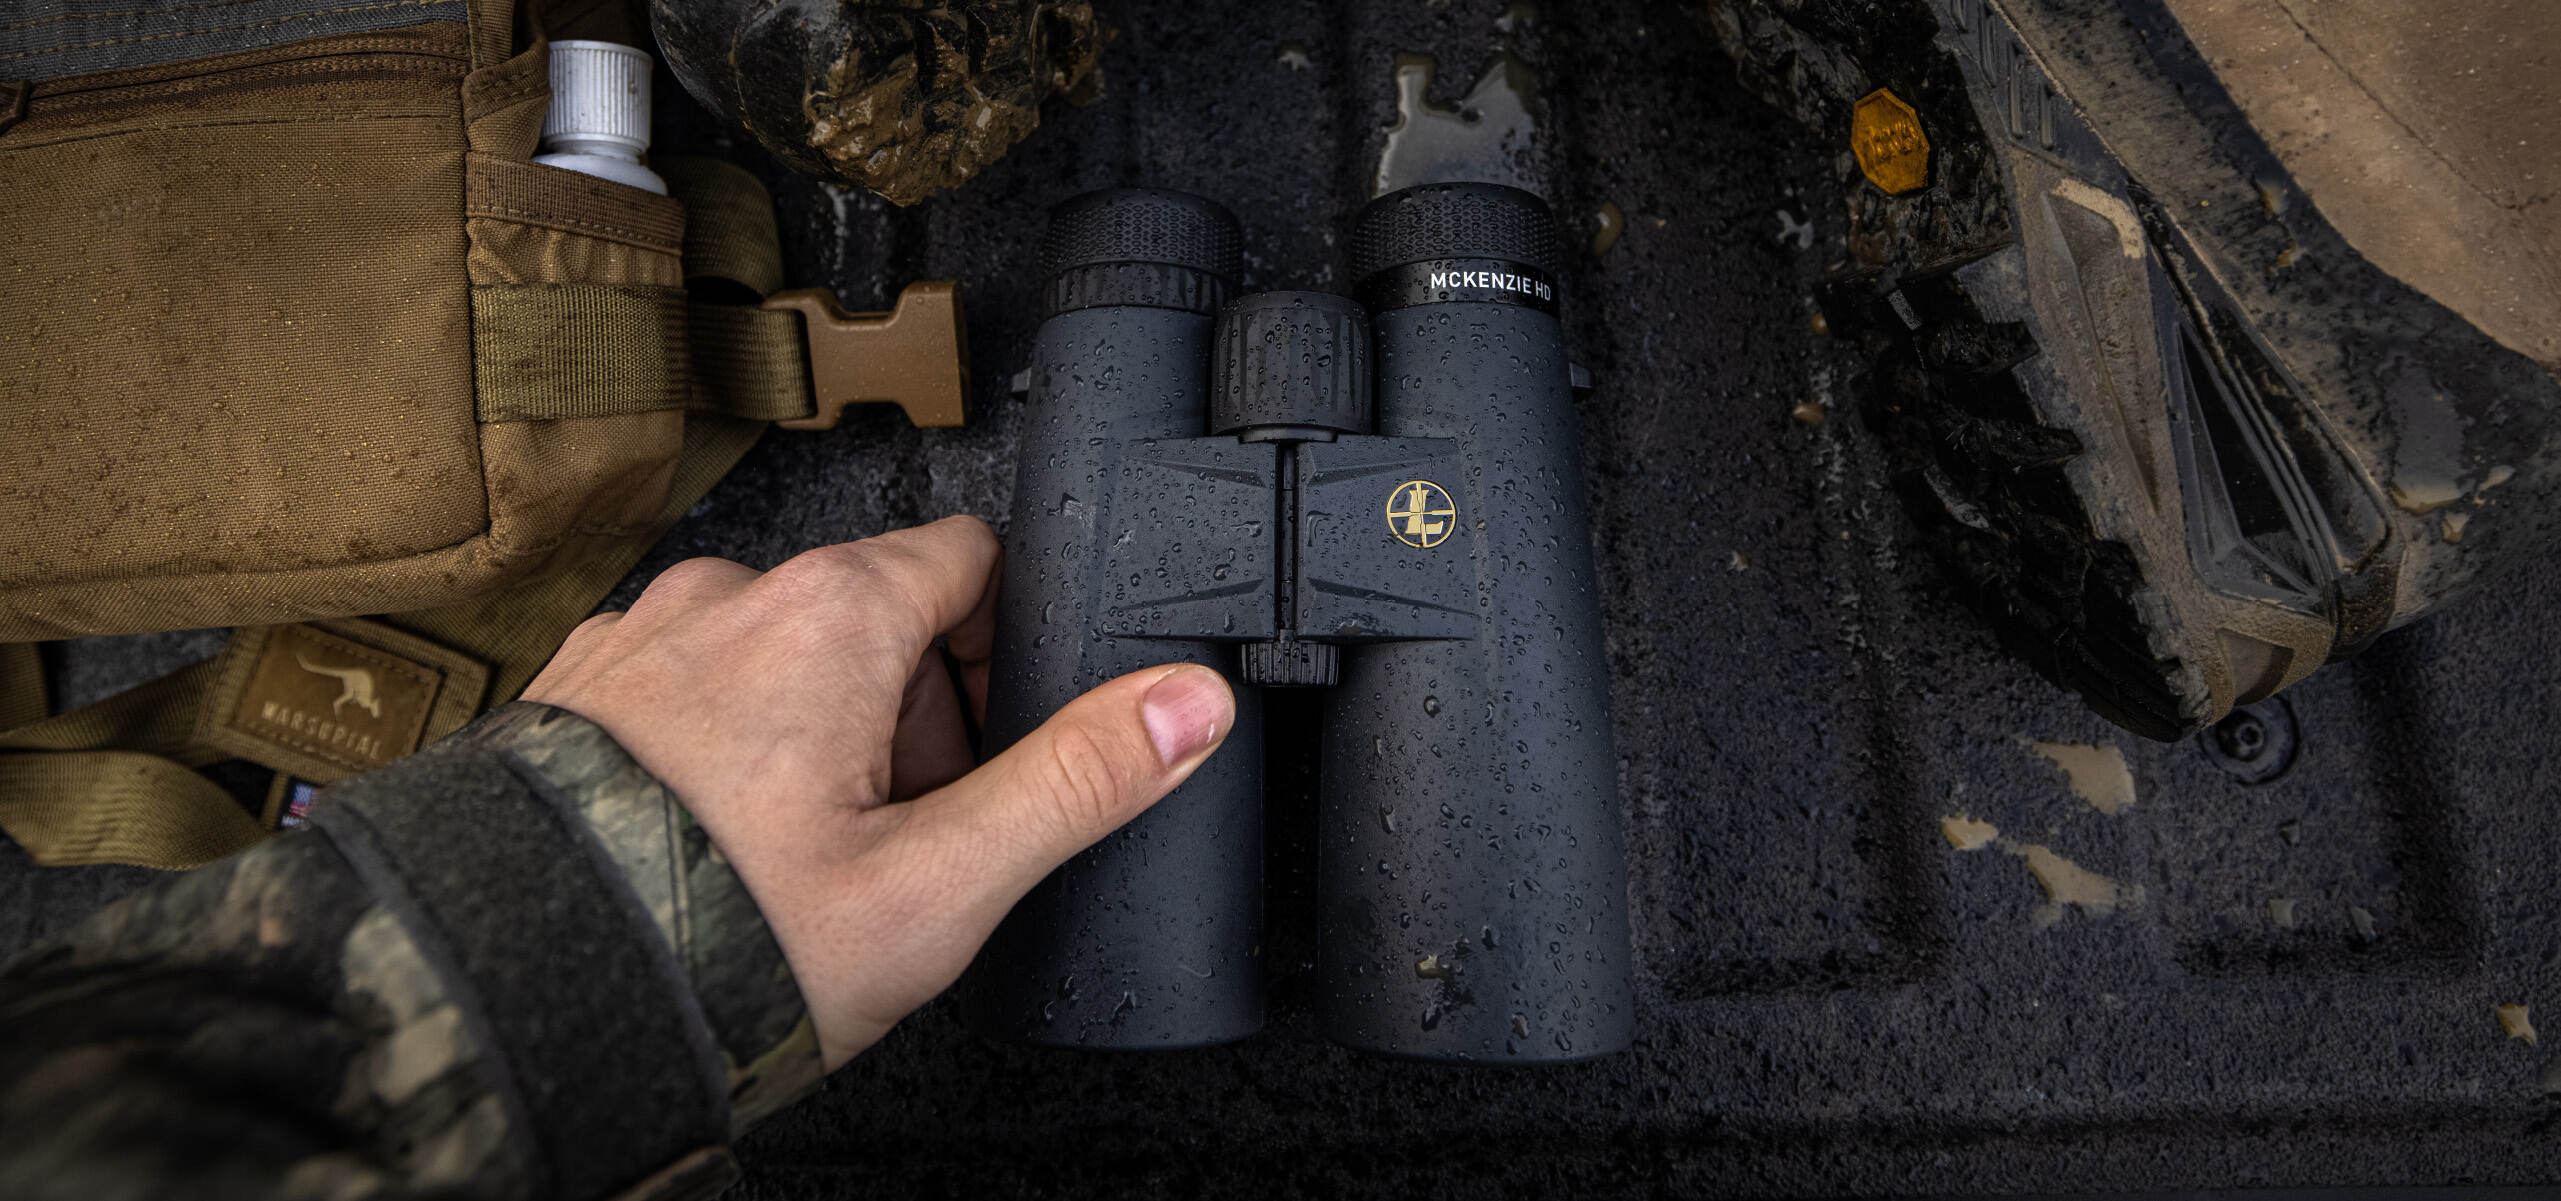 leupold binoculars in hunting gear